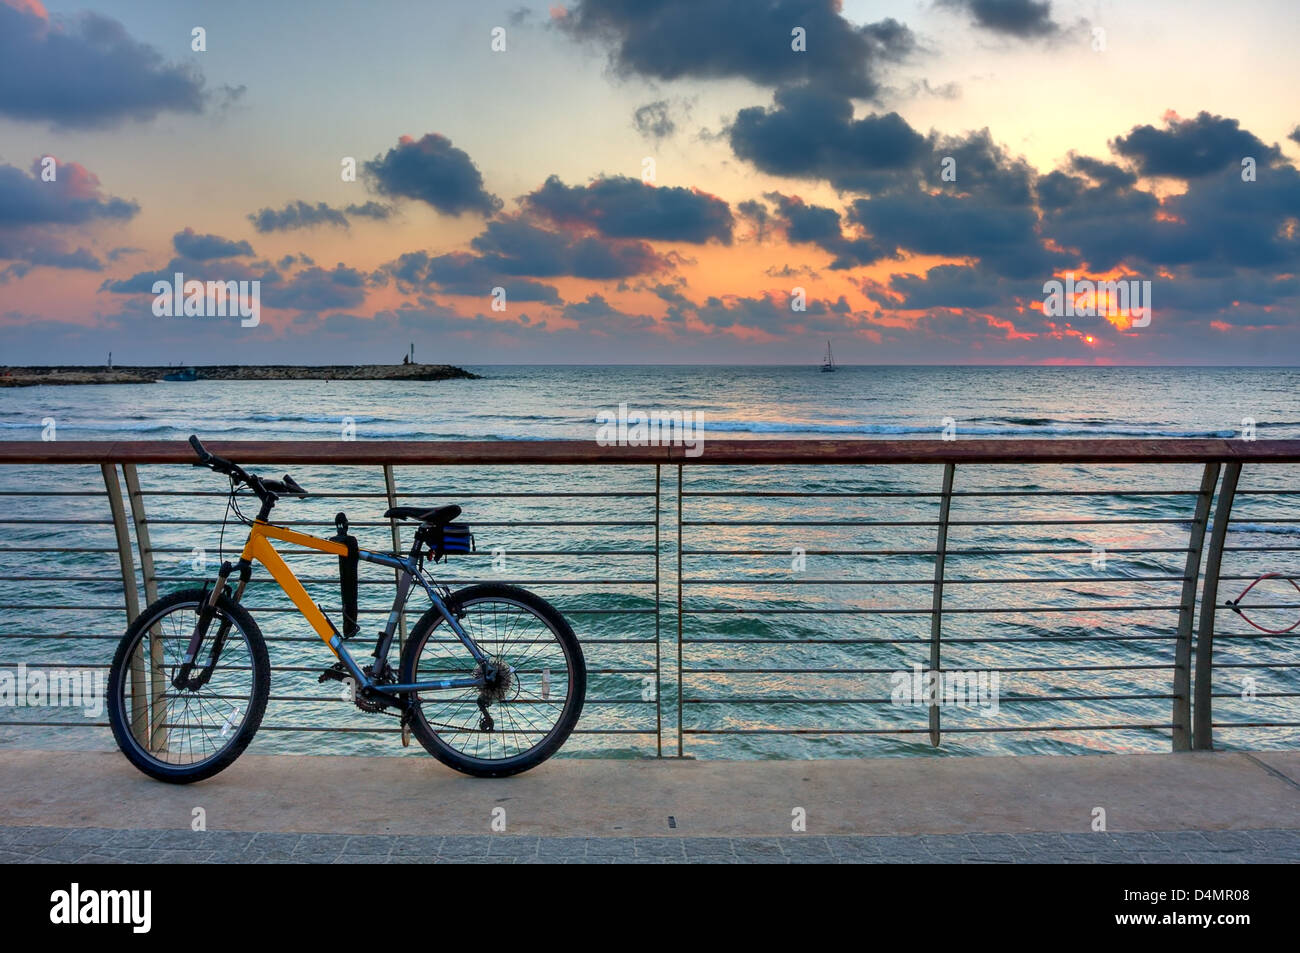 Mountain-Bike auf Promenade auf dem Hintergrund von Mittelmeer und schönen Sonnenuntergang Himmel mit Wolken in Tel Aviv, Israel. Stockfoto